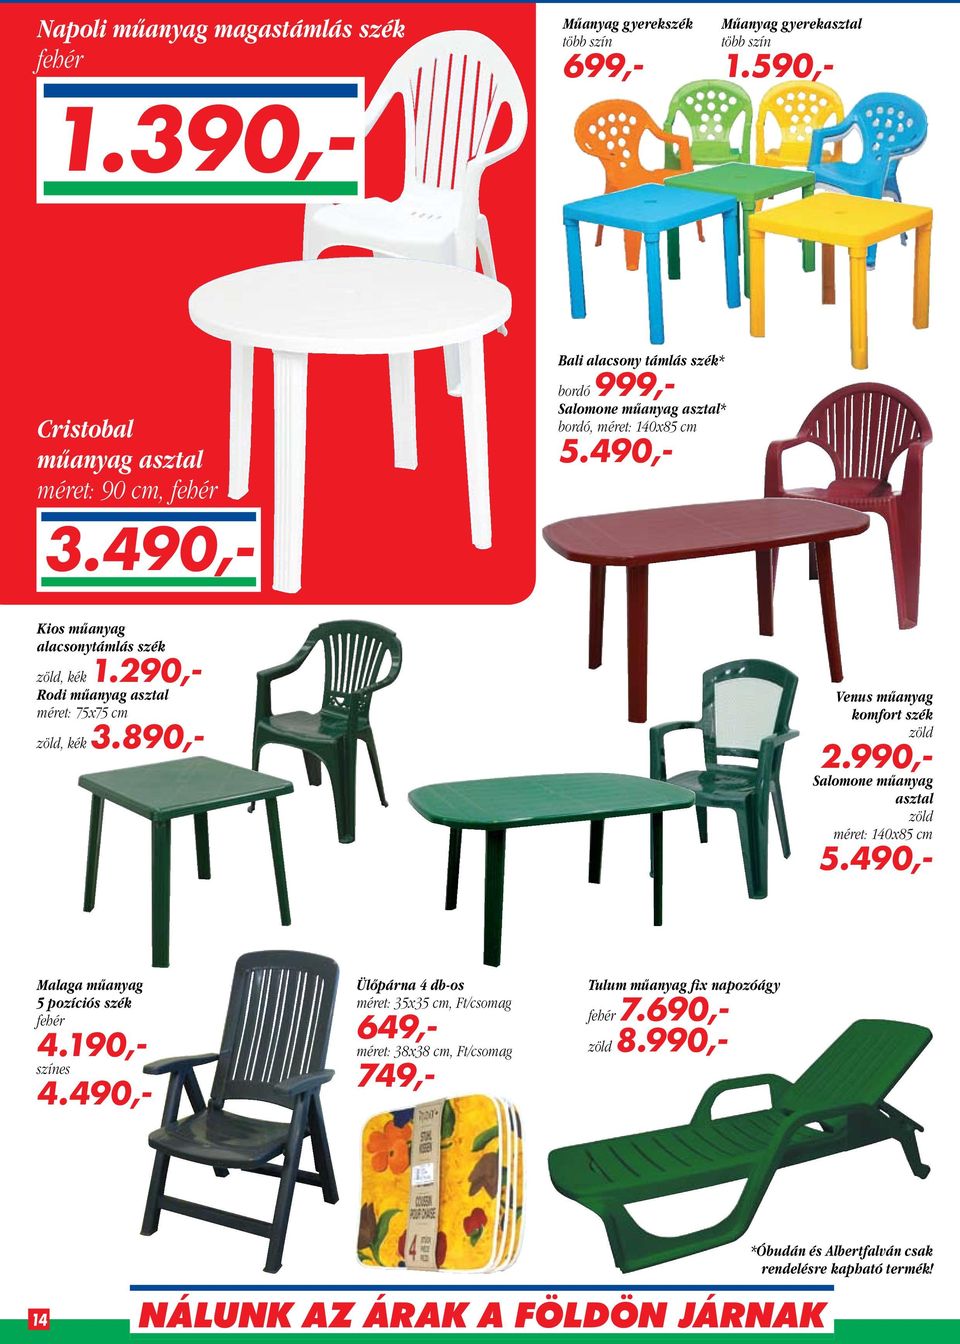 290,- Rodi műanyag asztal méret: 75x75 cm zöld, kék 3.890,- Venus műanyag komfort szék zöld 2.990,- Salomone műanyag asztal zöld méret: 140x85 cm 5.